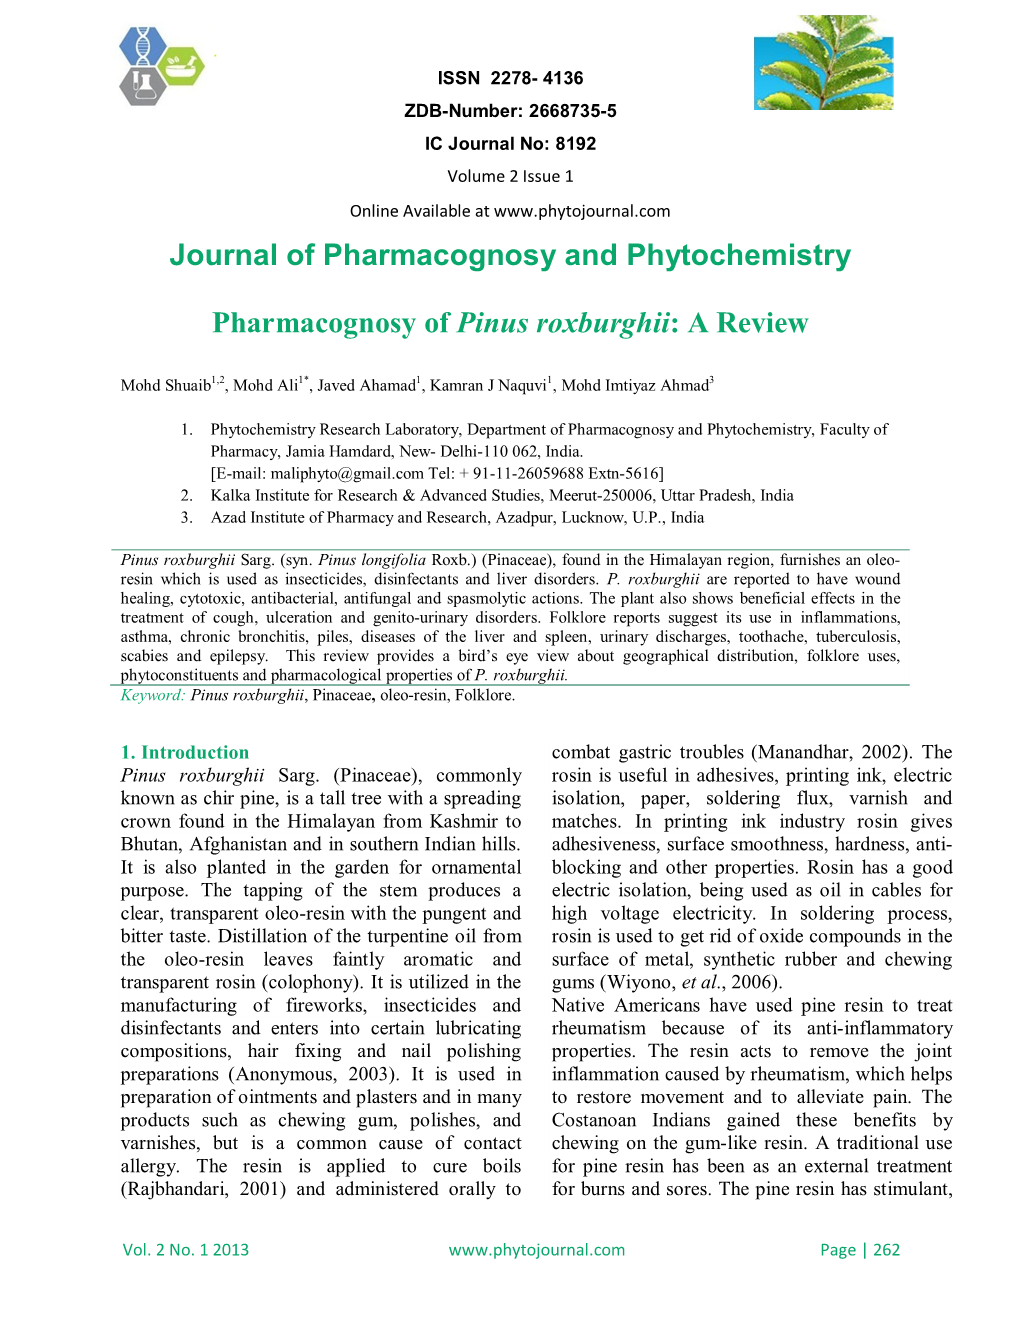 Pharmacognosy of Pinus Roxburghii: a Review